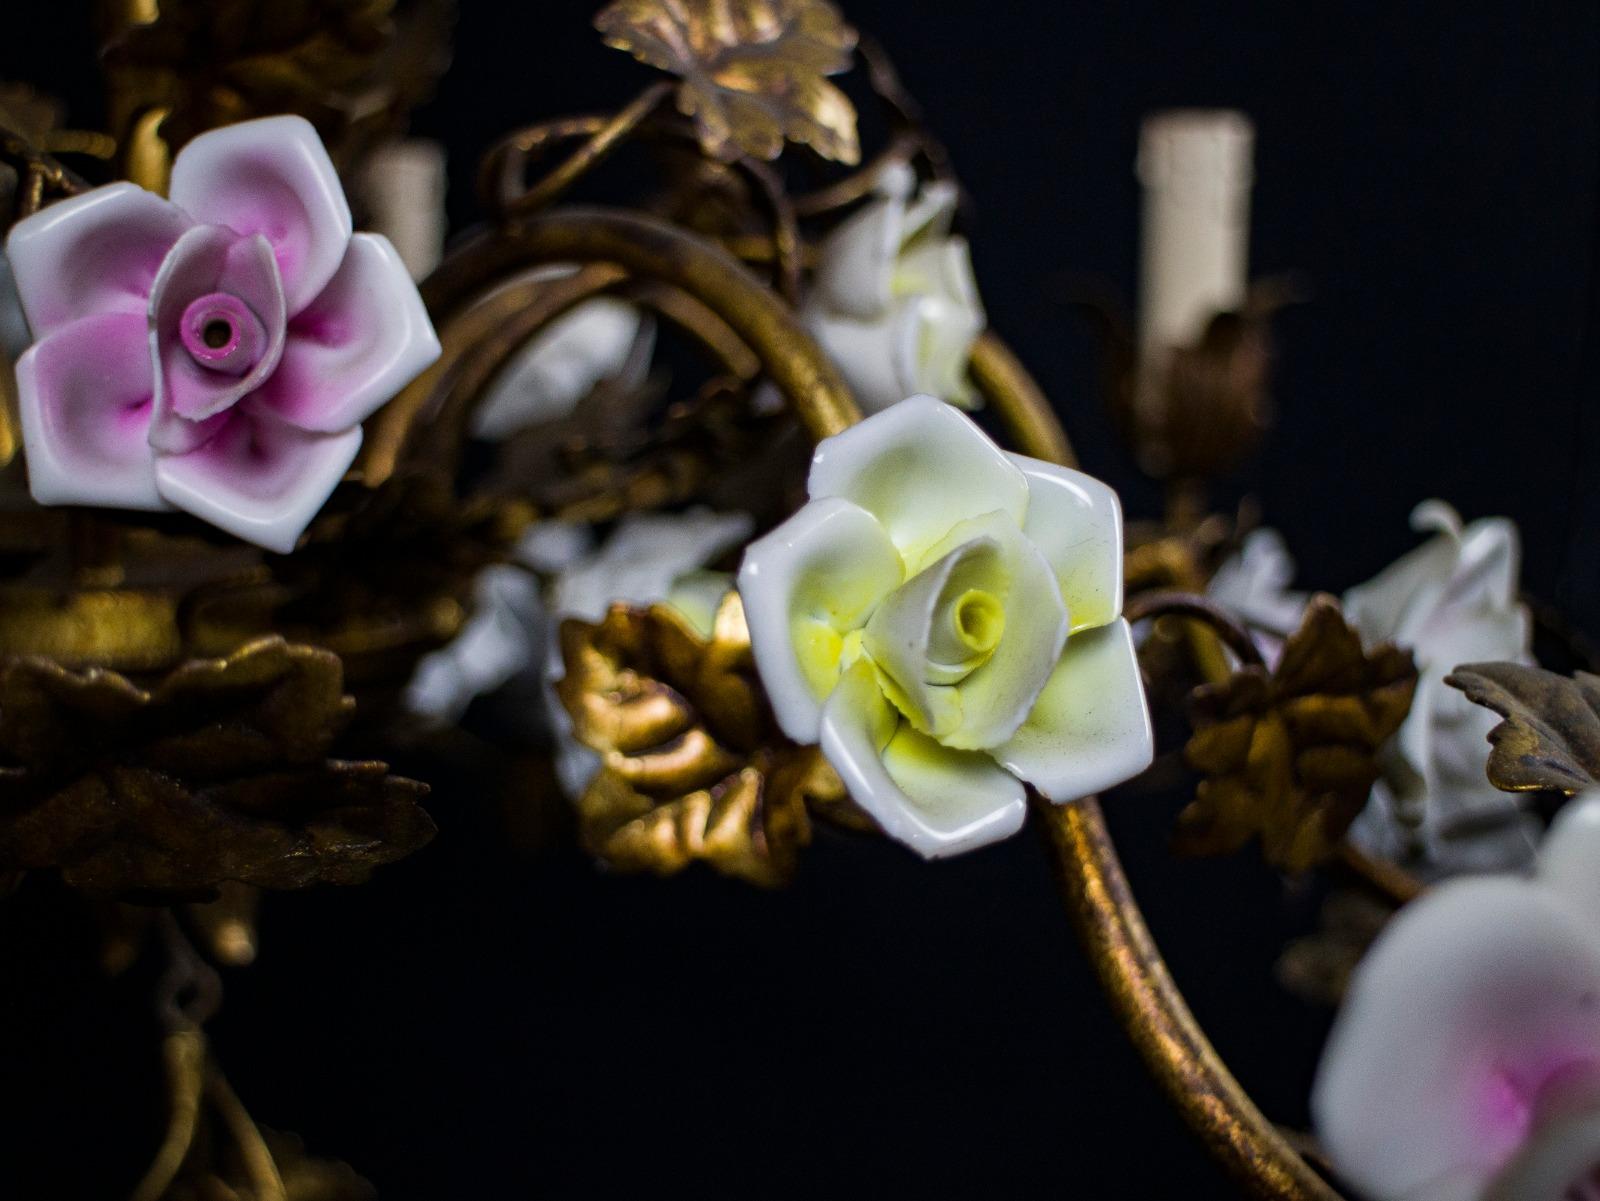 Wunderschöner italienischer Kronleuchter in Käfigform mit bunten Porzellanblumen im Angebot 2